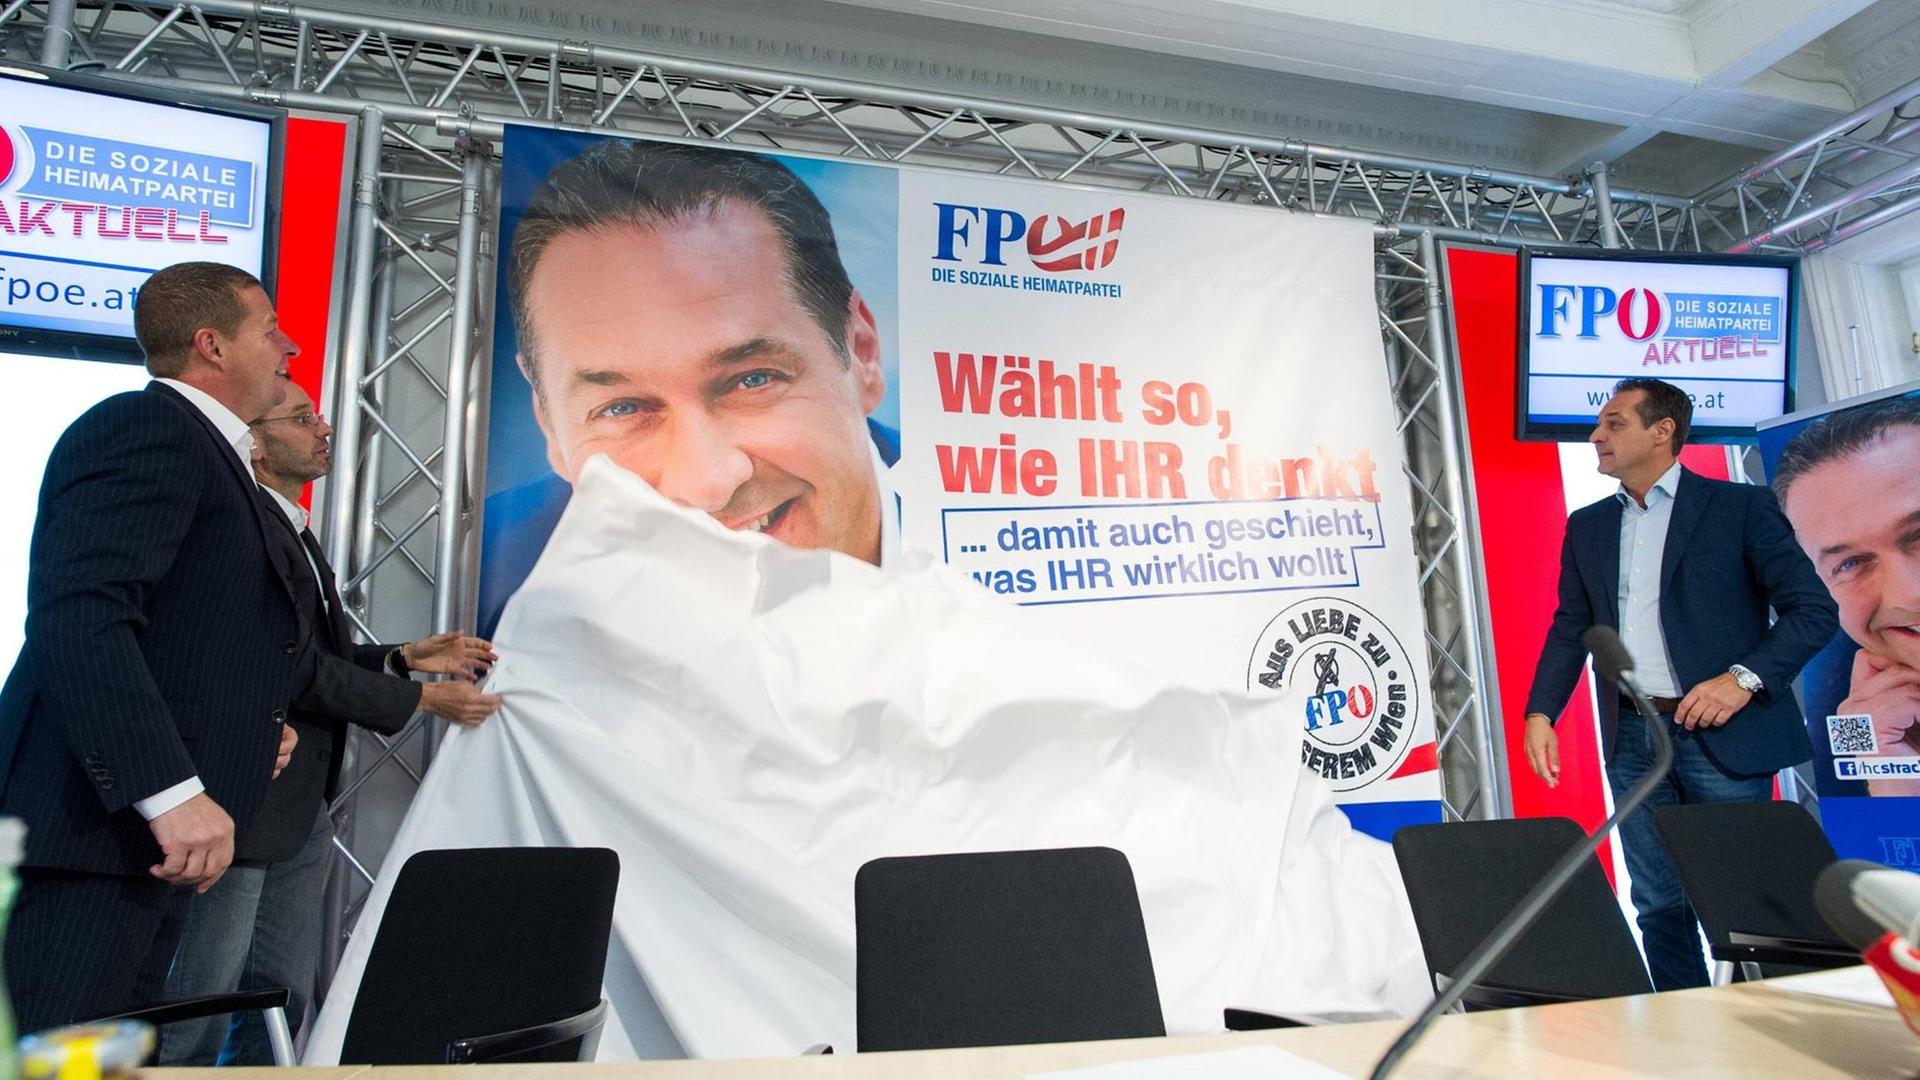 Eine Plakatpräsentation der FPÖ Ende September in Wien. Im Bild von links nach rechts: Landesparteisekretär Anton Mahdalik, Nationalratsabgeordneter Herbert Kickl und der FPÖ-Spitzenkandidat in Wien, Heinz-Christian Strache.